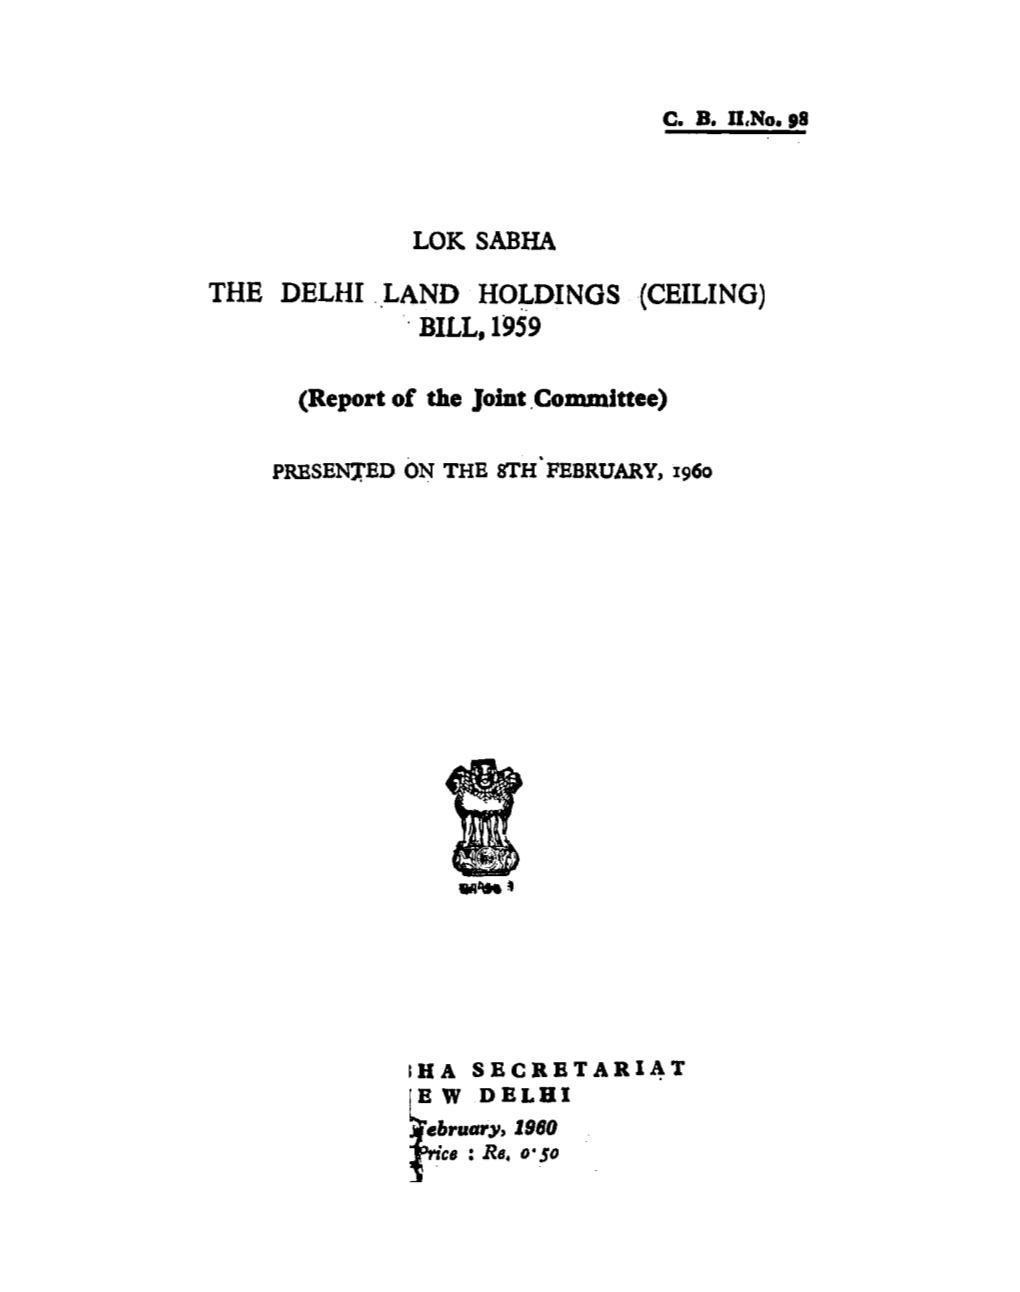 The Delhi Land Hoj: Dinos (Ceiling) ·. Bill,1959